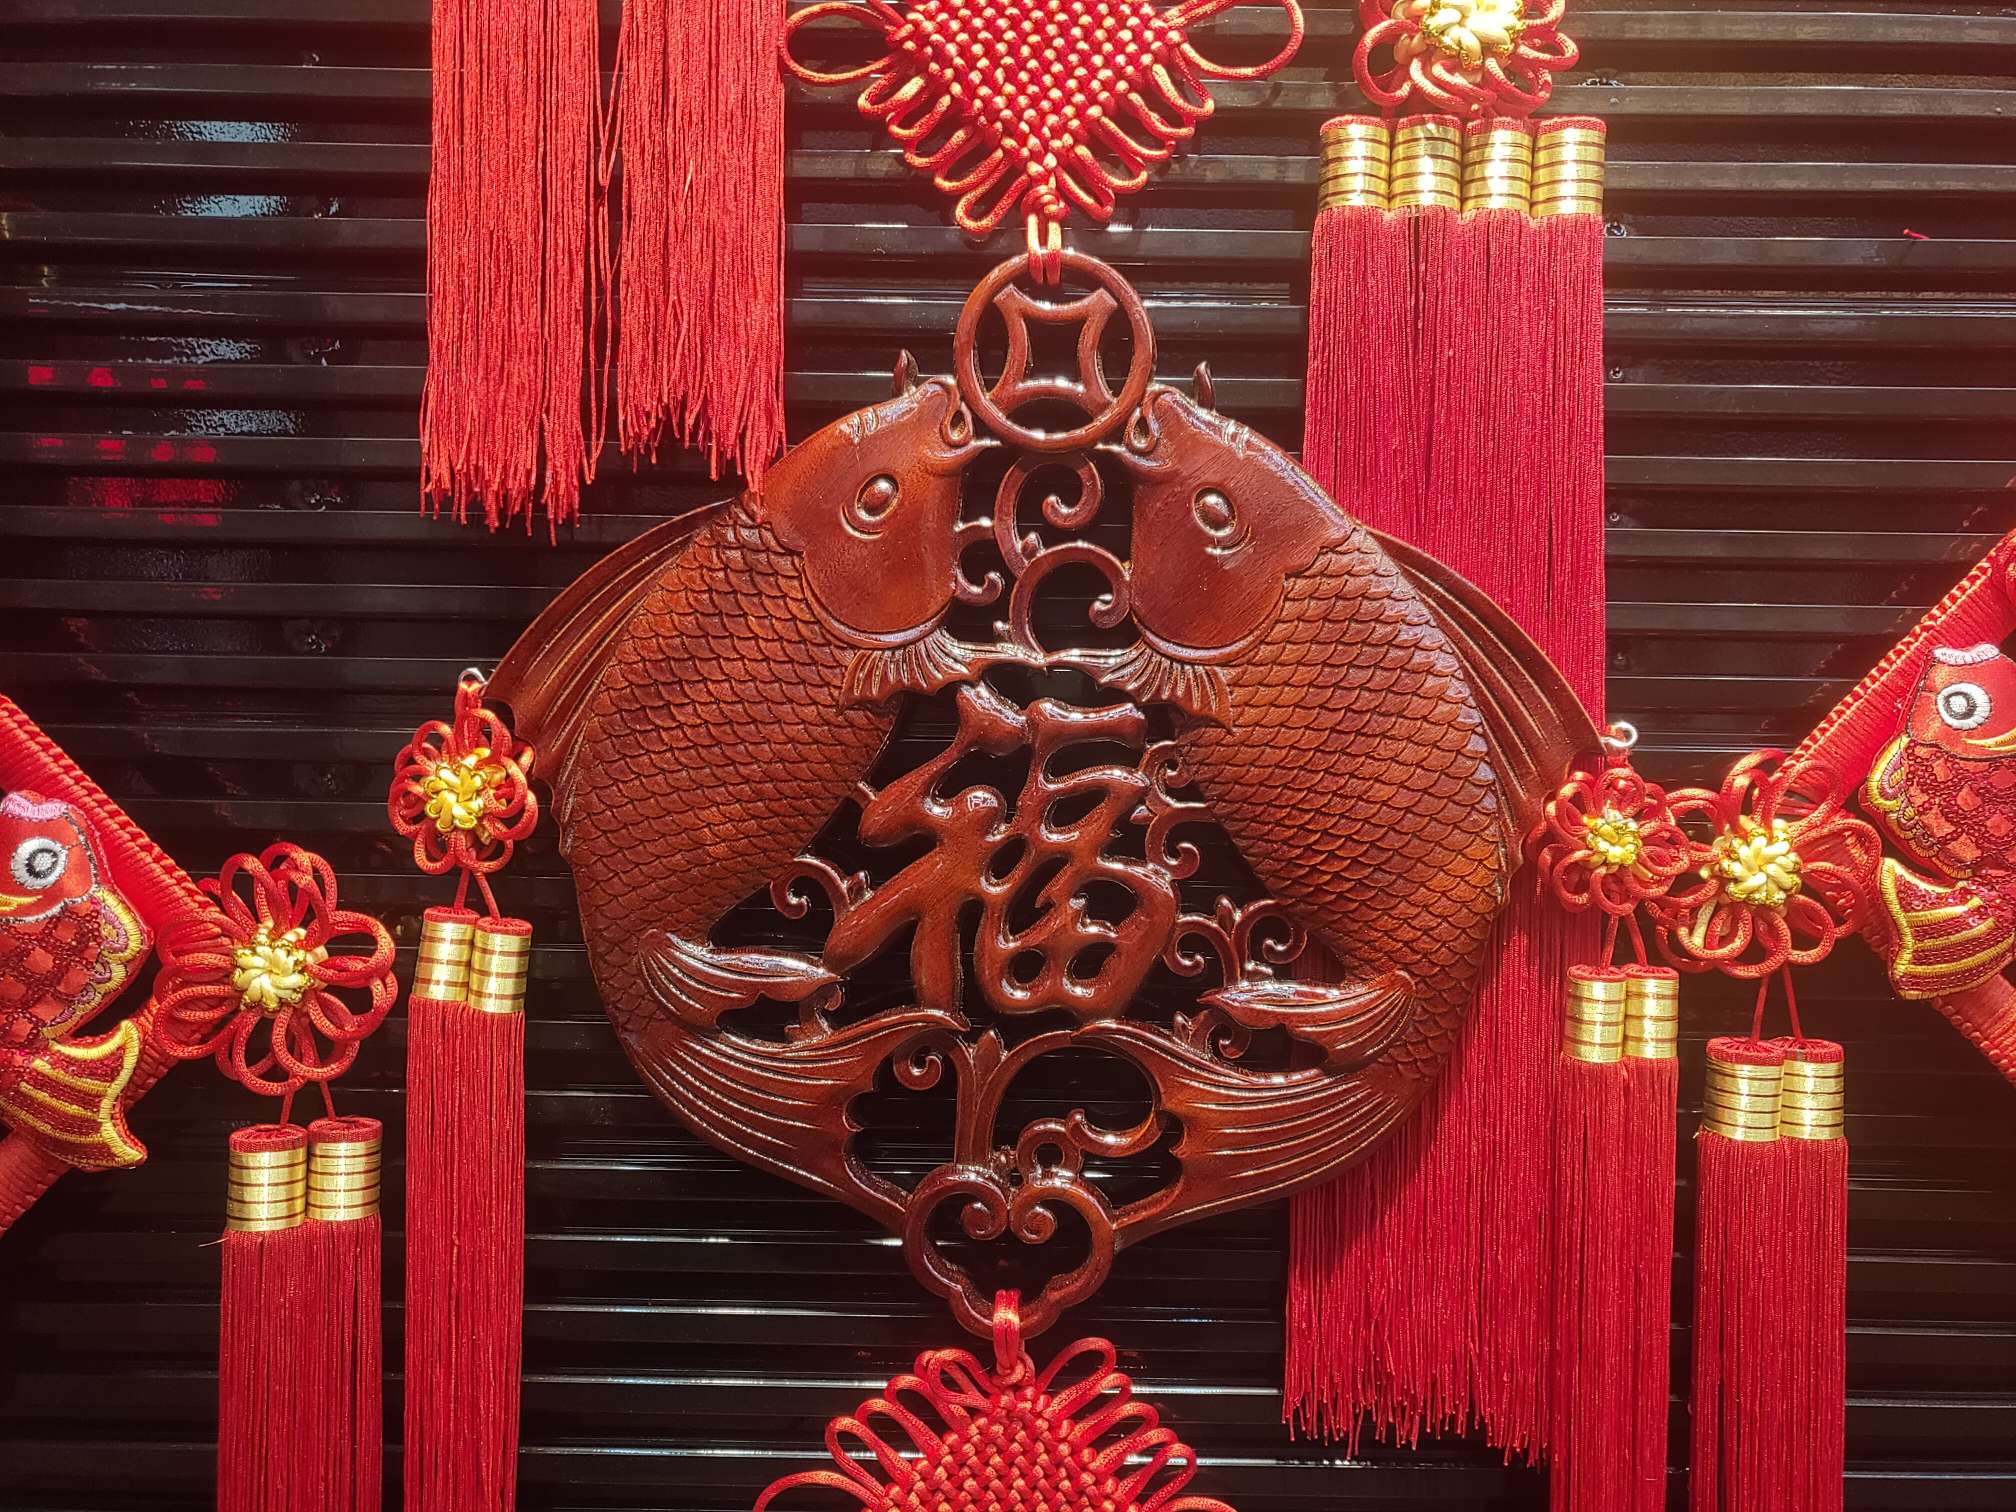 40#方形木雕51春节喜庆用品节日用品红木精品